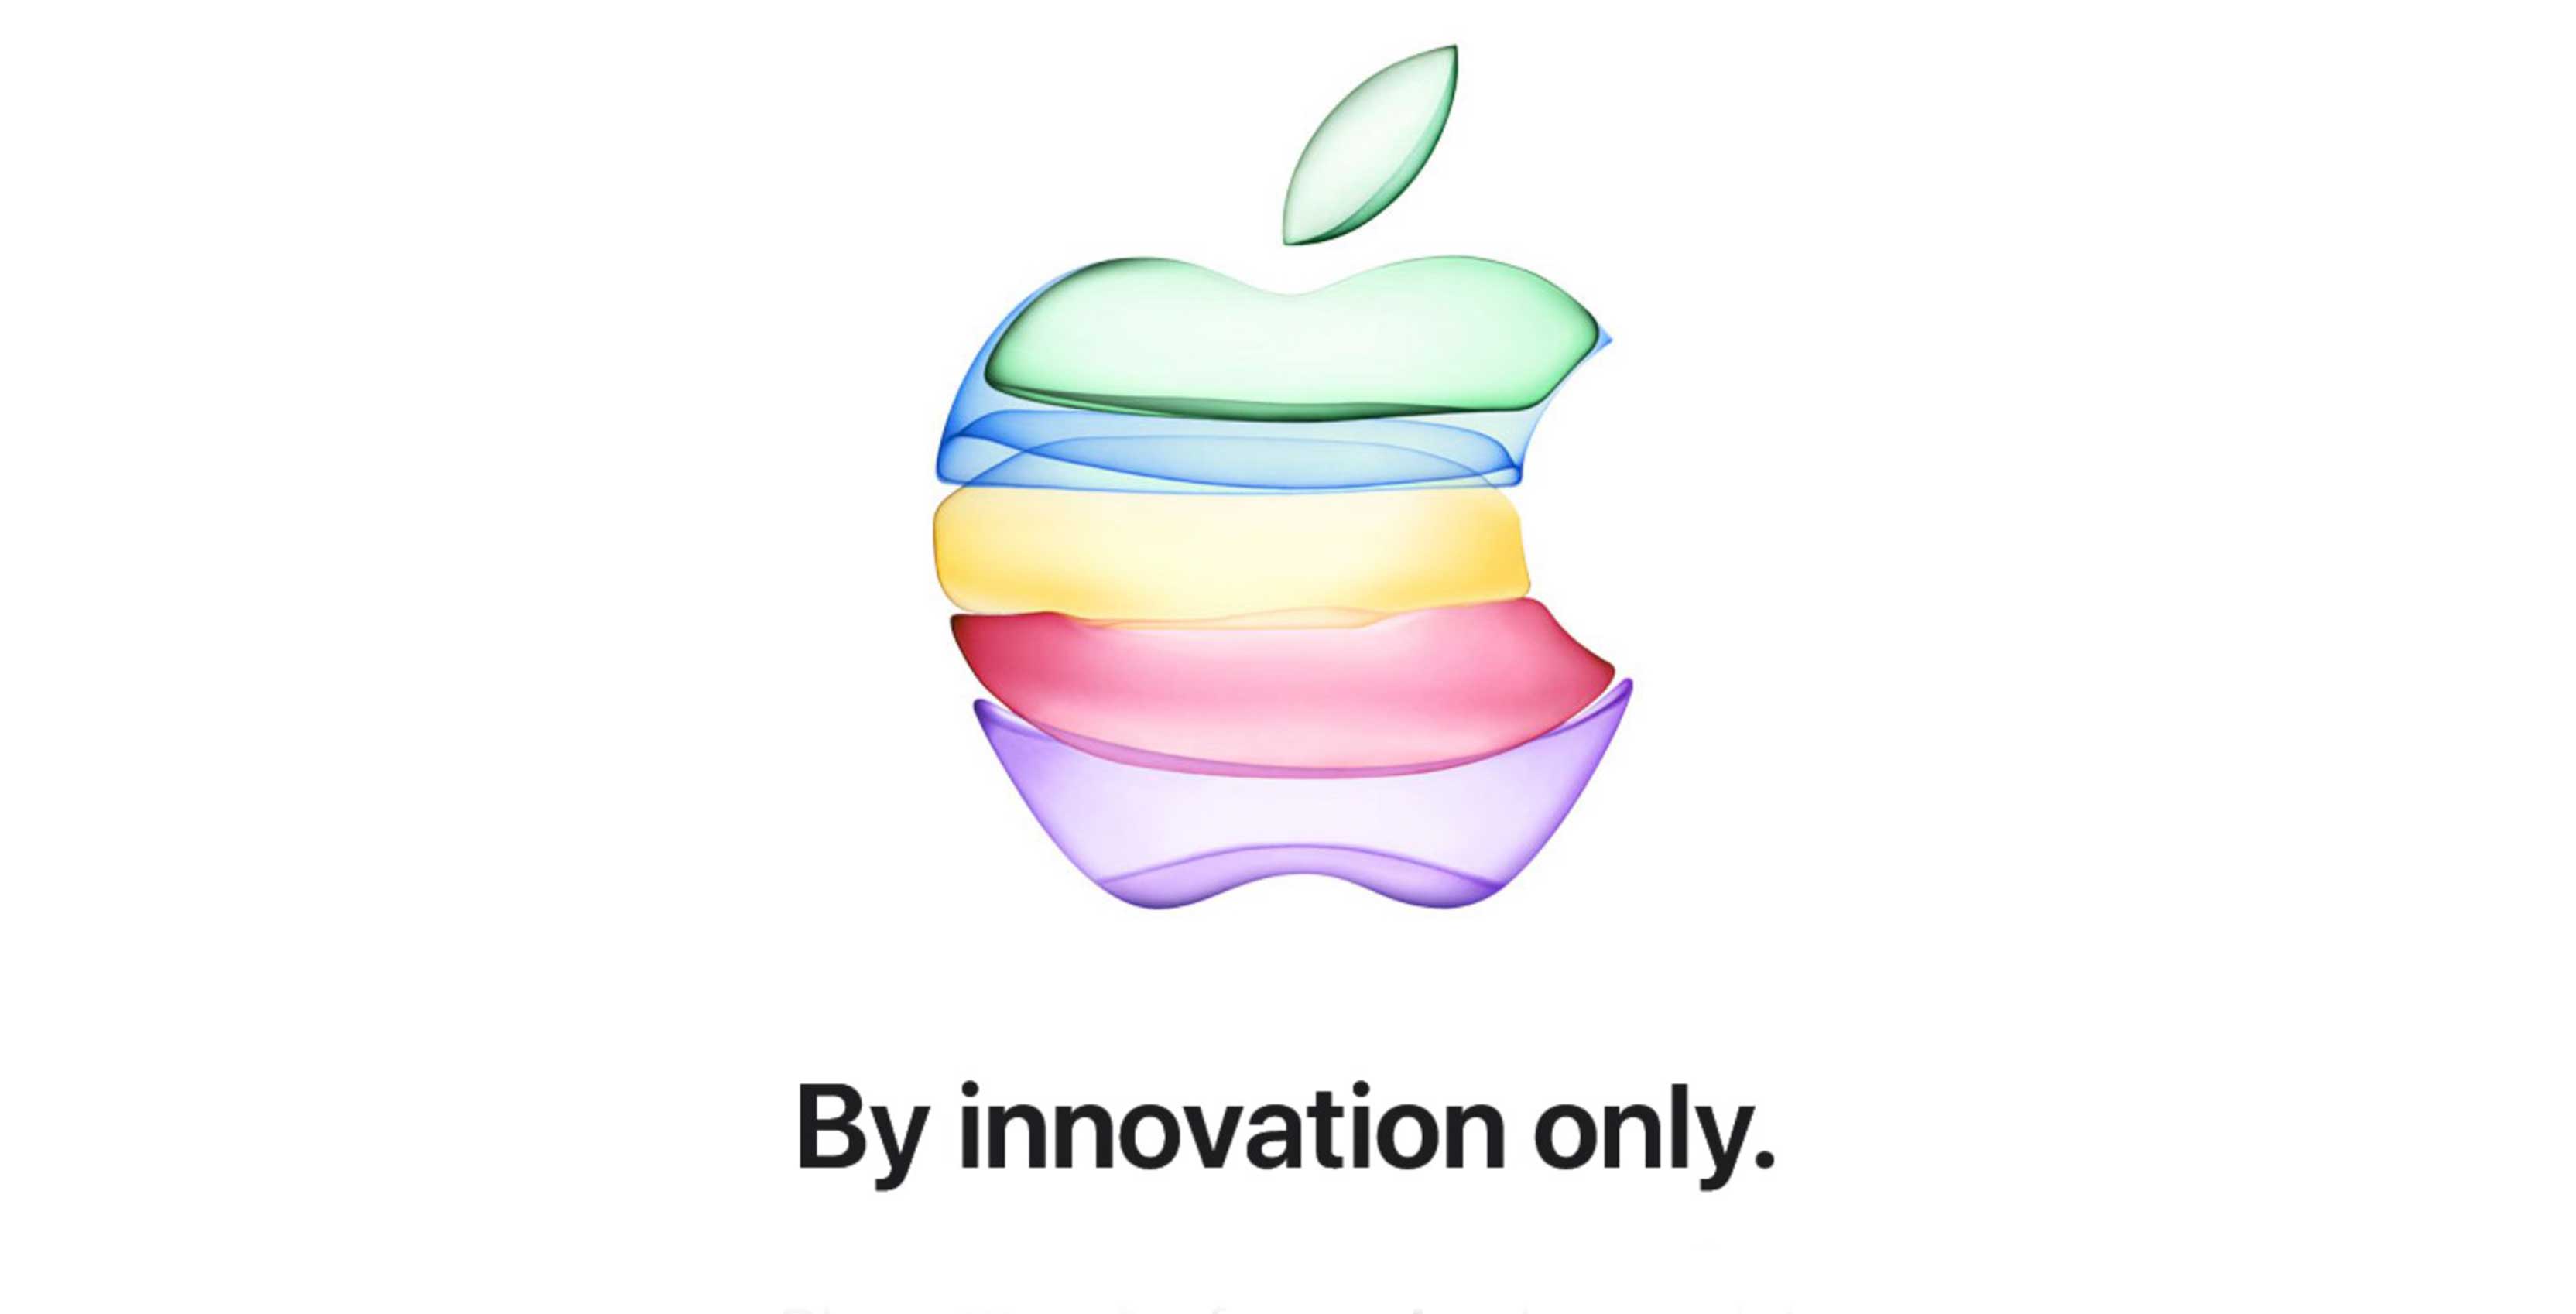 Apple klasik gökkuşağı logosunu tekrar kullanmaya başlayabilir